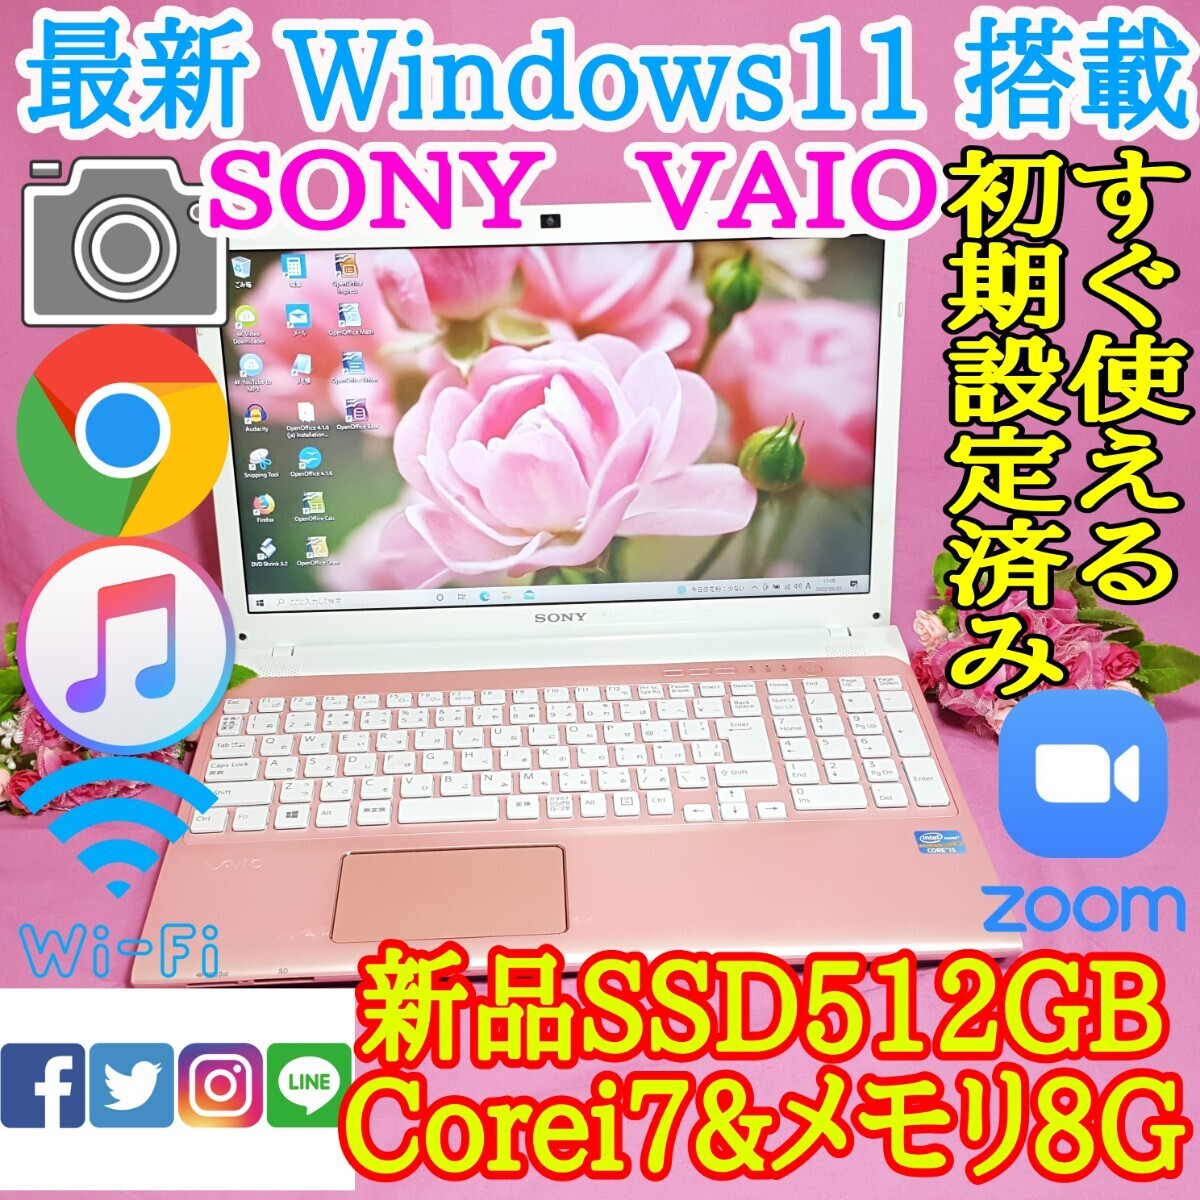 極上品/SONY/VAIO/ピンク色/最新Windows11/新品爆速SSD512GB/3世代i7/メモリ8GB/USB3.0/HDMI/LINE/iTunes/Office/Wi-Fi/便利なソフト多数!!_画像1